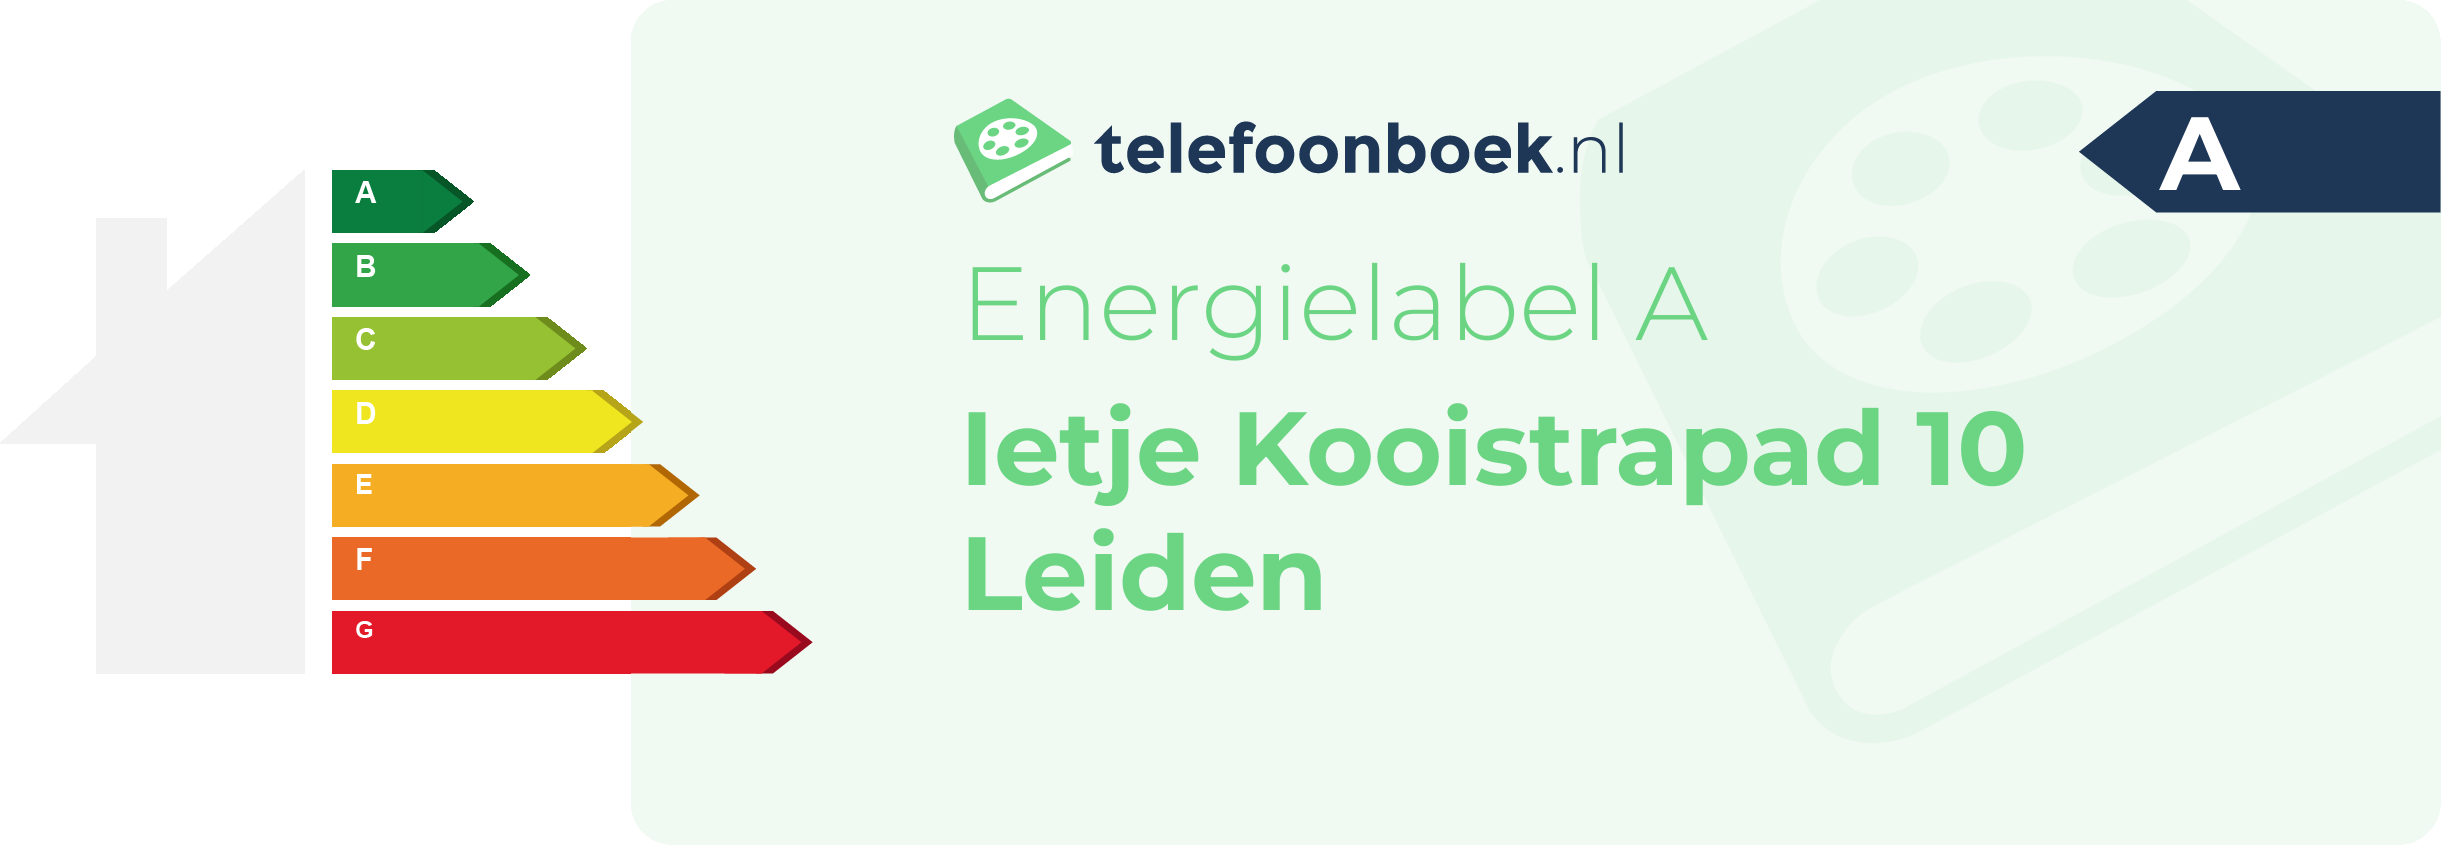 Energielabel Ietje Kooistrapad 10 Leiden